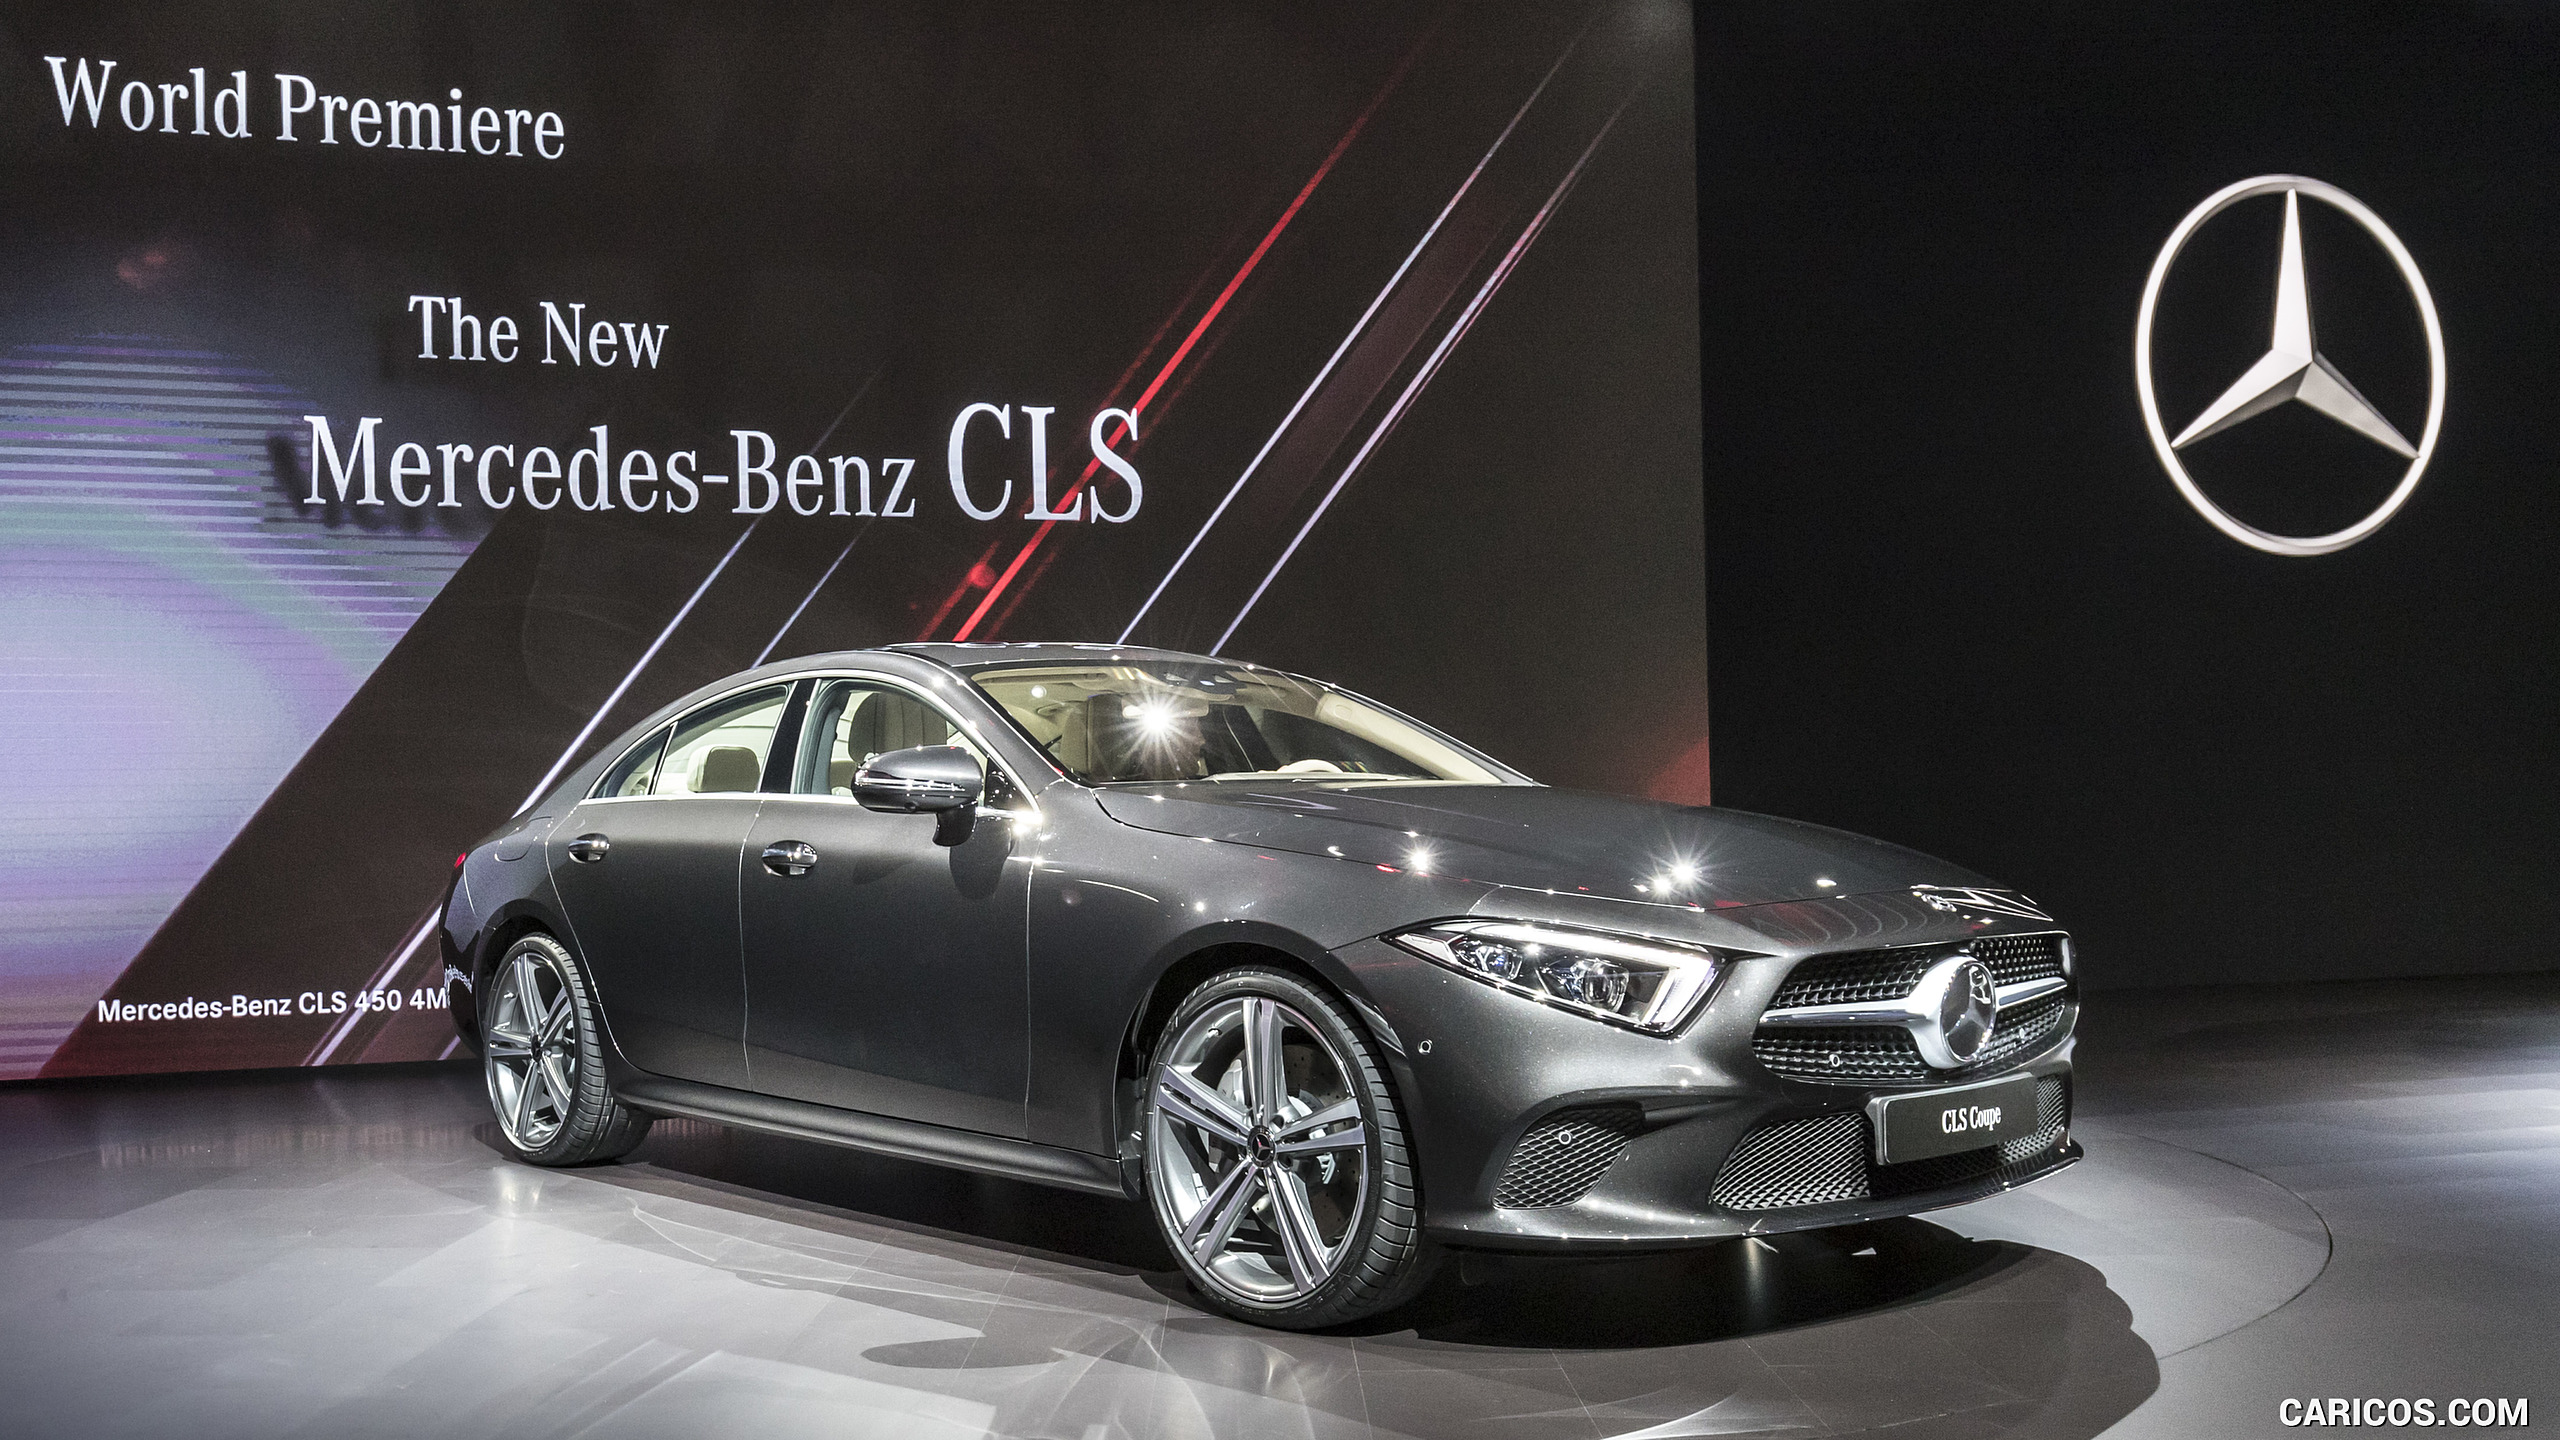 2019 Mercedes-Benz CLS at LA Auto Show, #64 of 231